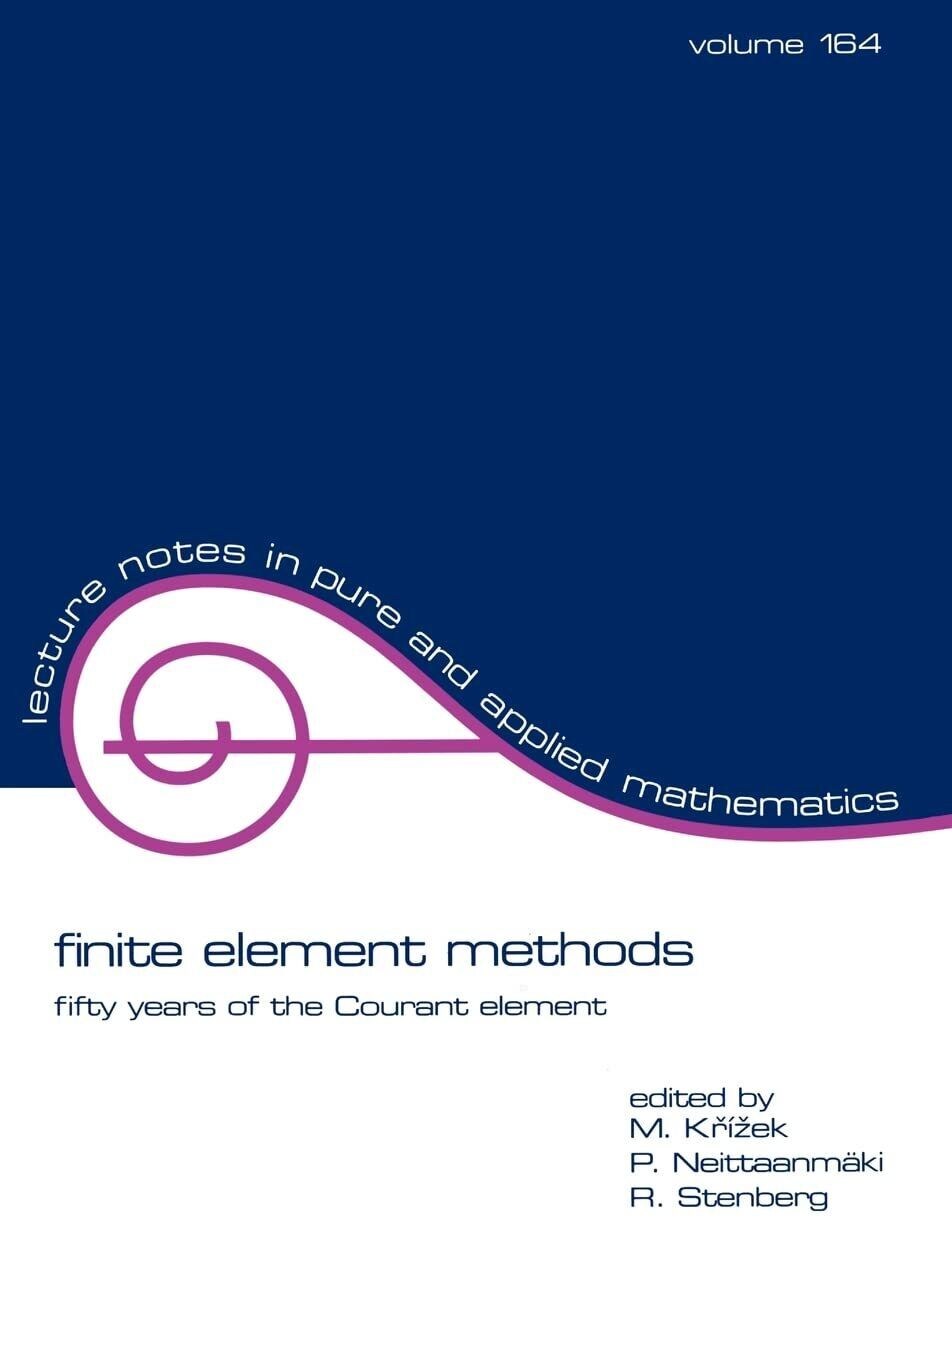 Finite Element Methods (Volume 164) - CRC Press - 1994